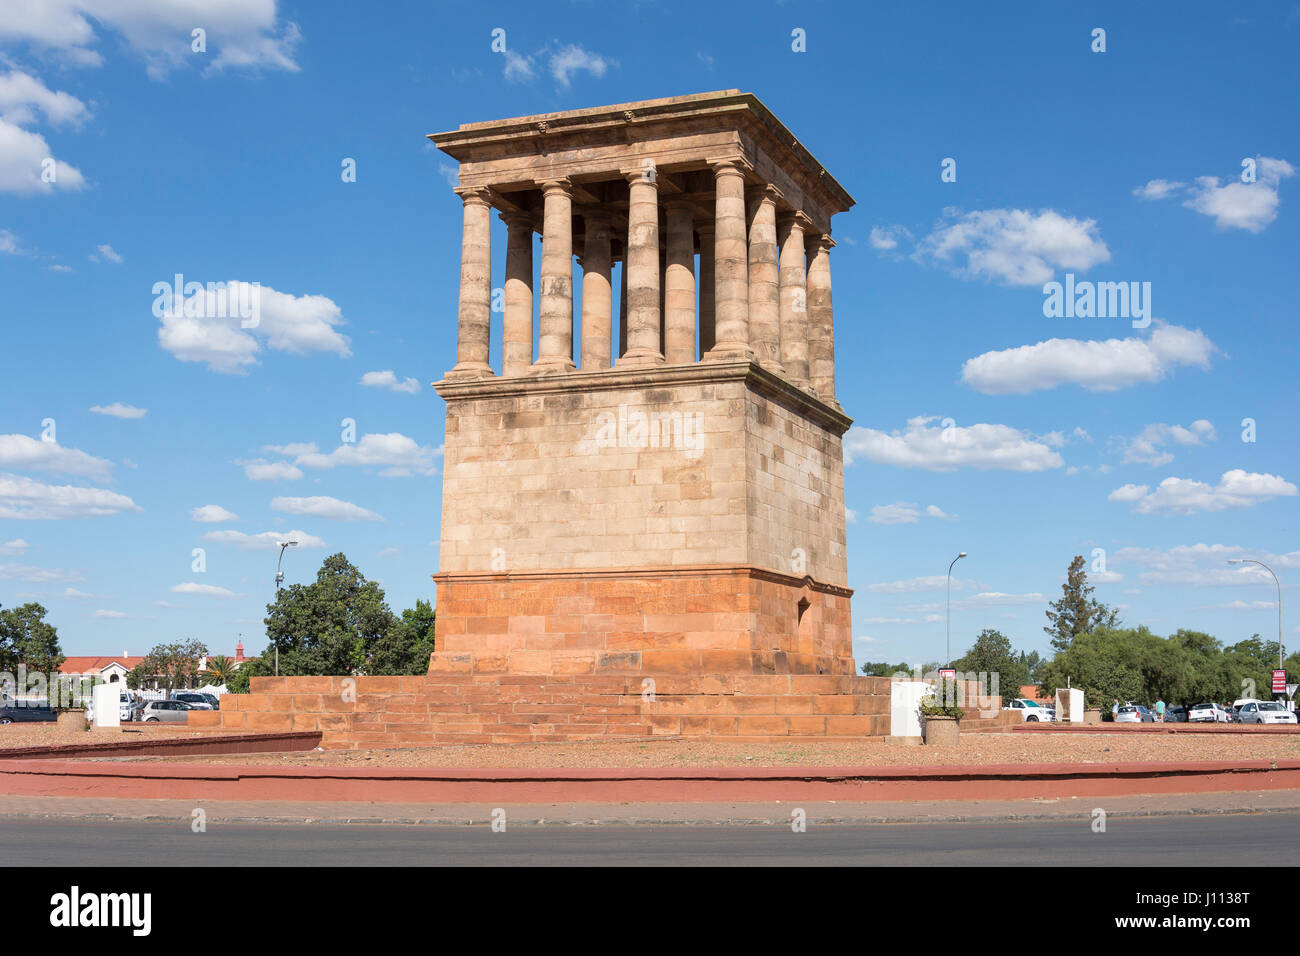 Le Mémorial de la paix et de la justice communautaire, Greenpoint Square, Greenpoint, Kimberley, dans le Nord de la Province du Cap, Afrique du Sud Banque D'Images